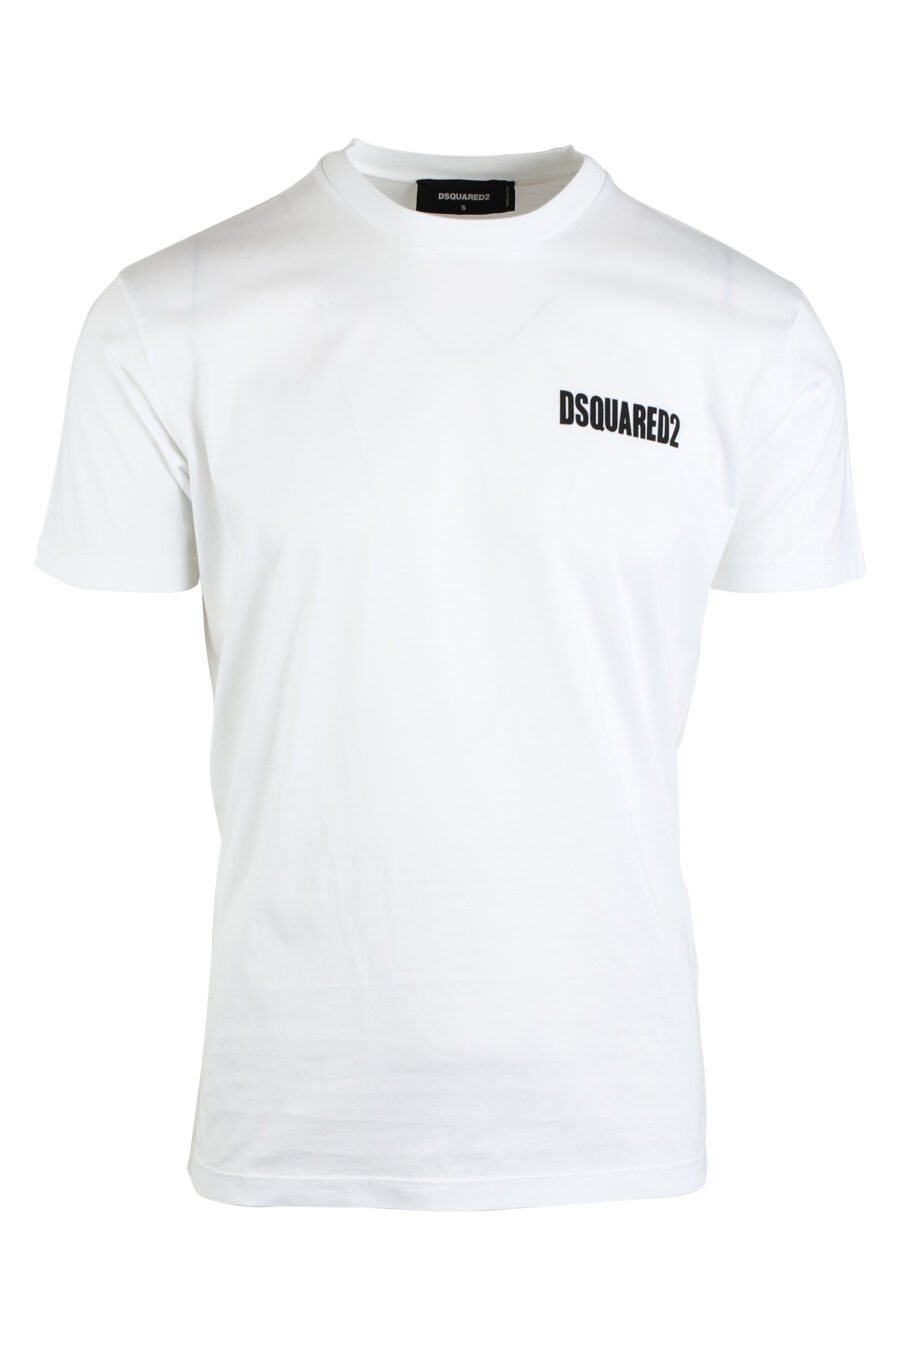 T-shirt branca com minilogo preto - IMG 0673